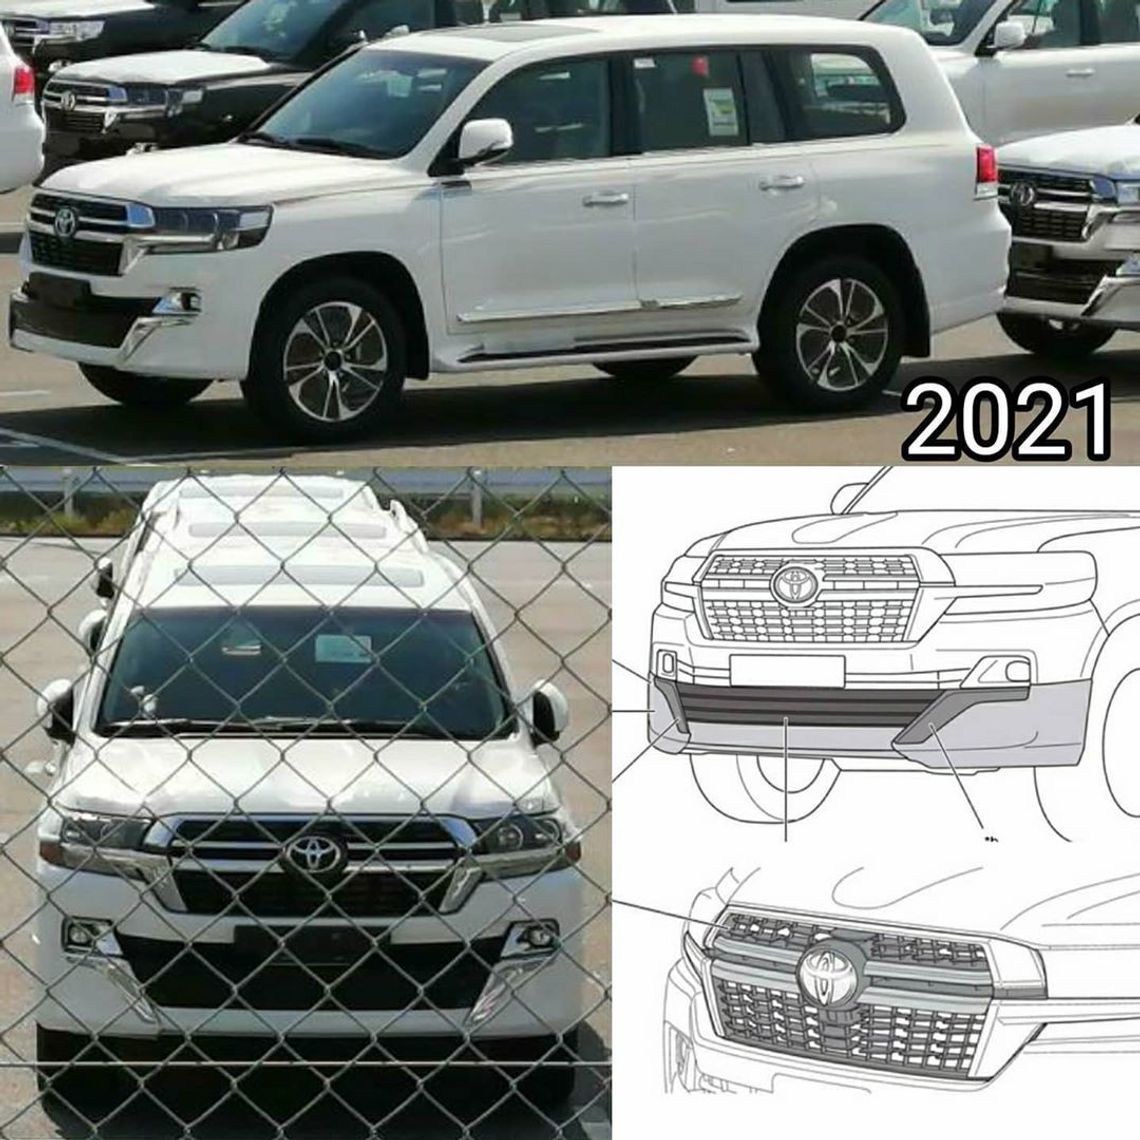 Berita, Toyota-Land-Cruiser-200-facelift: Toyota Land Cruiser 200 Dapat Minor Change, Versi Terakhir?